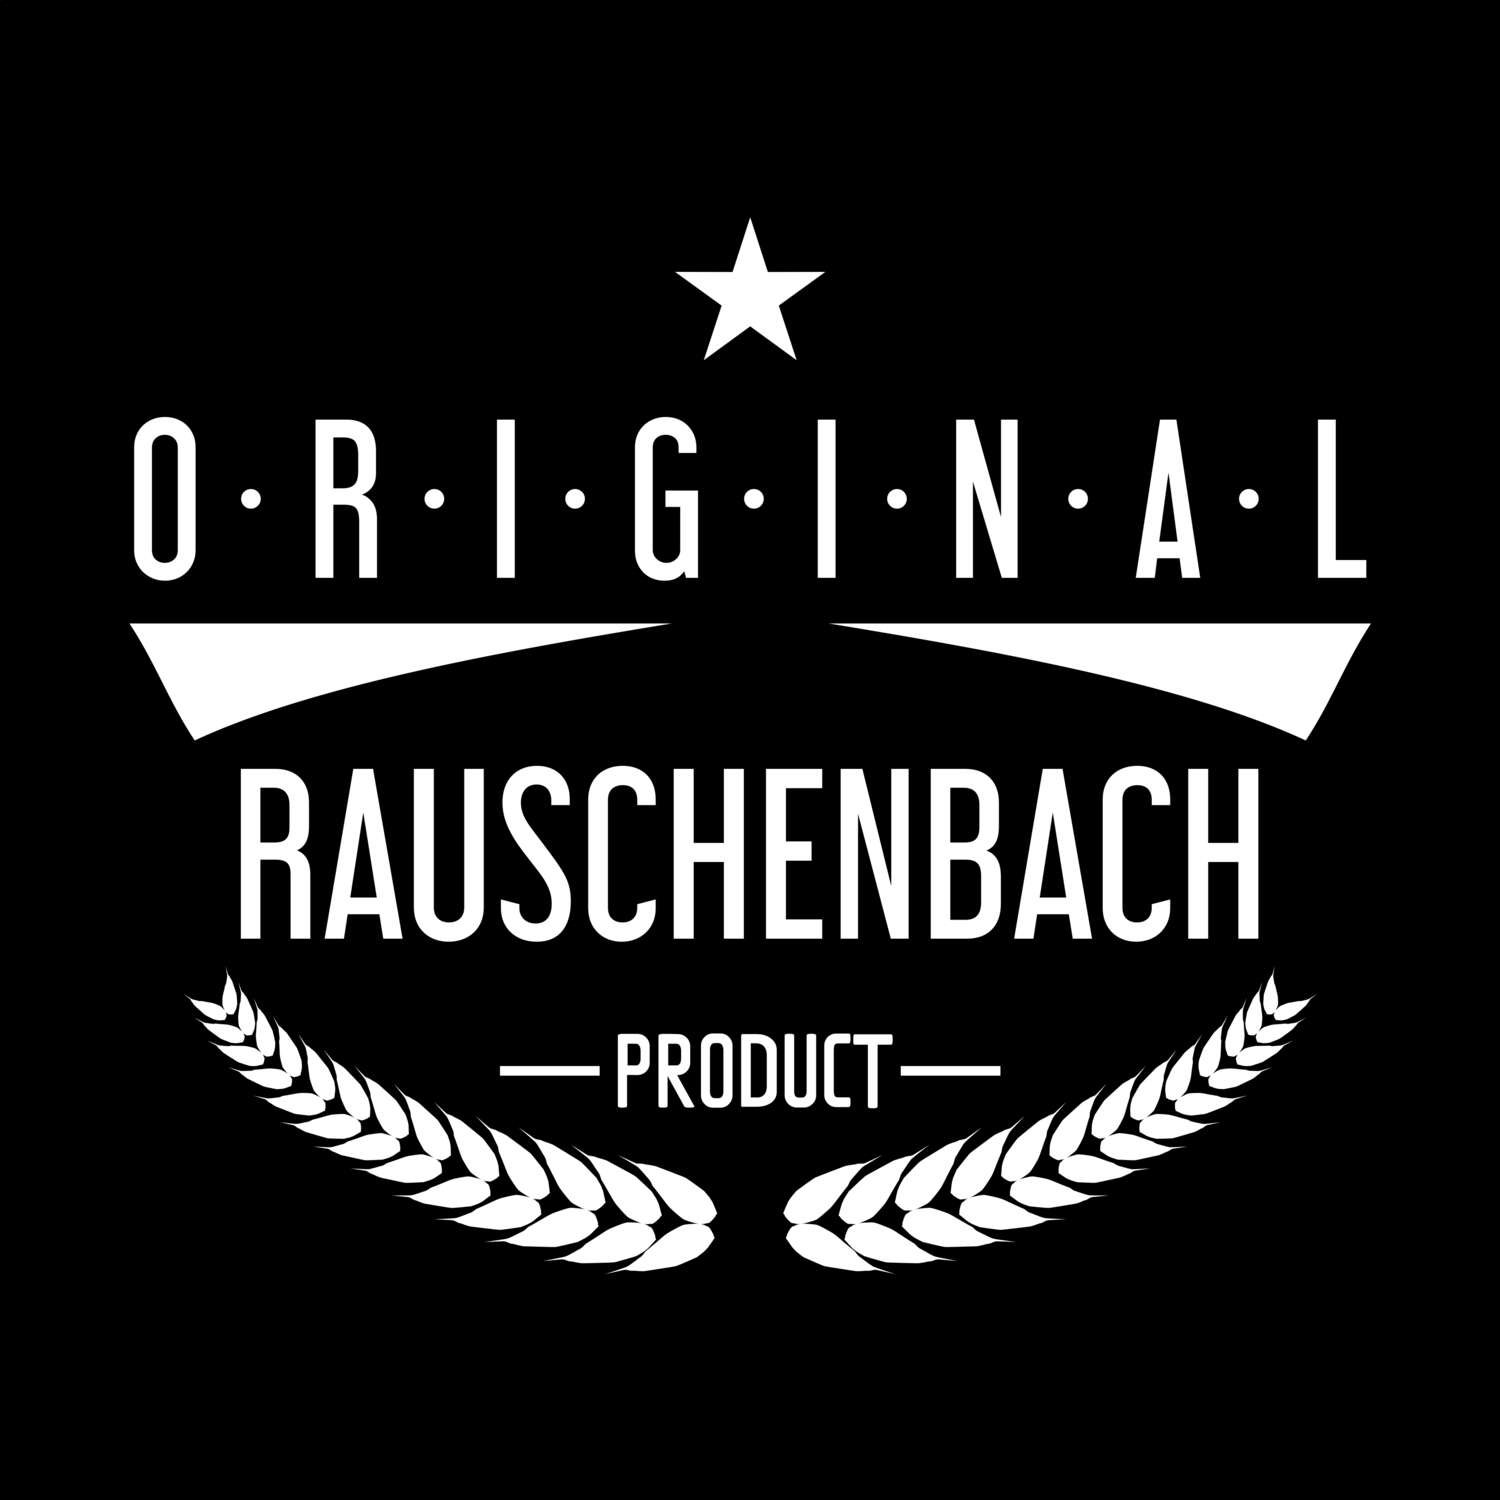 Rauschenbach T-Shirt »Original Product«